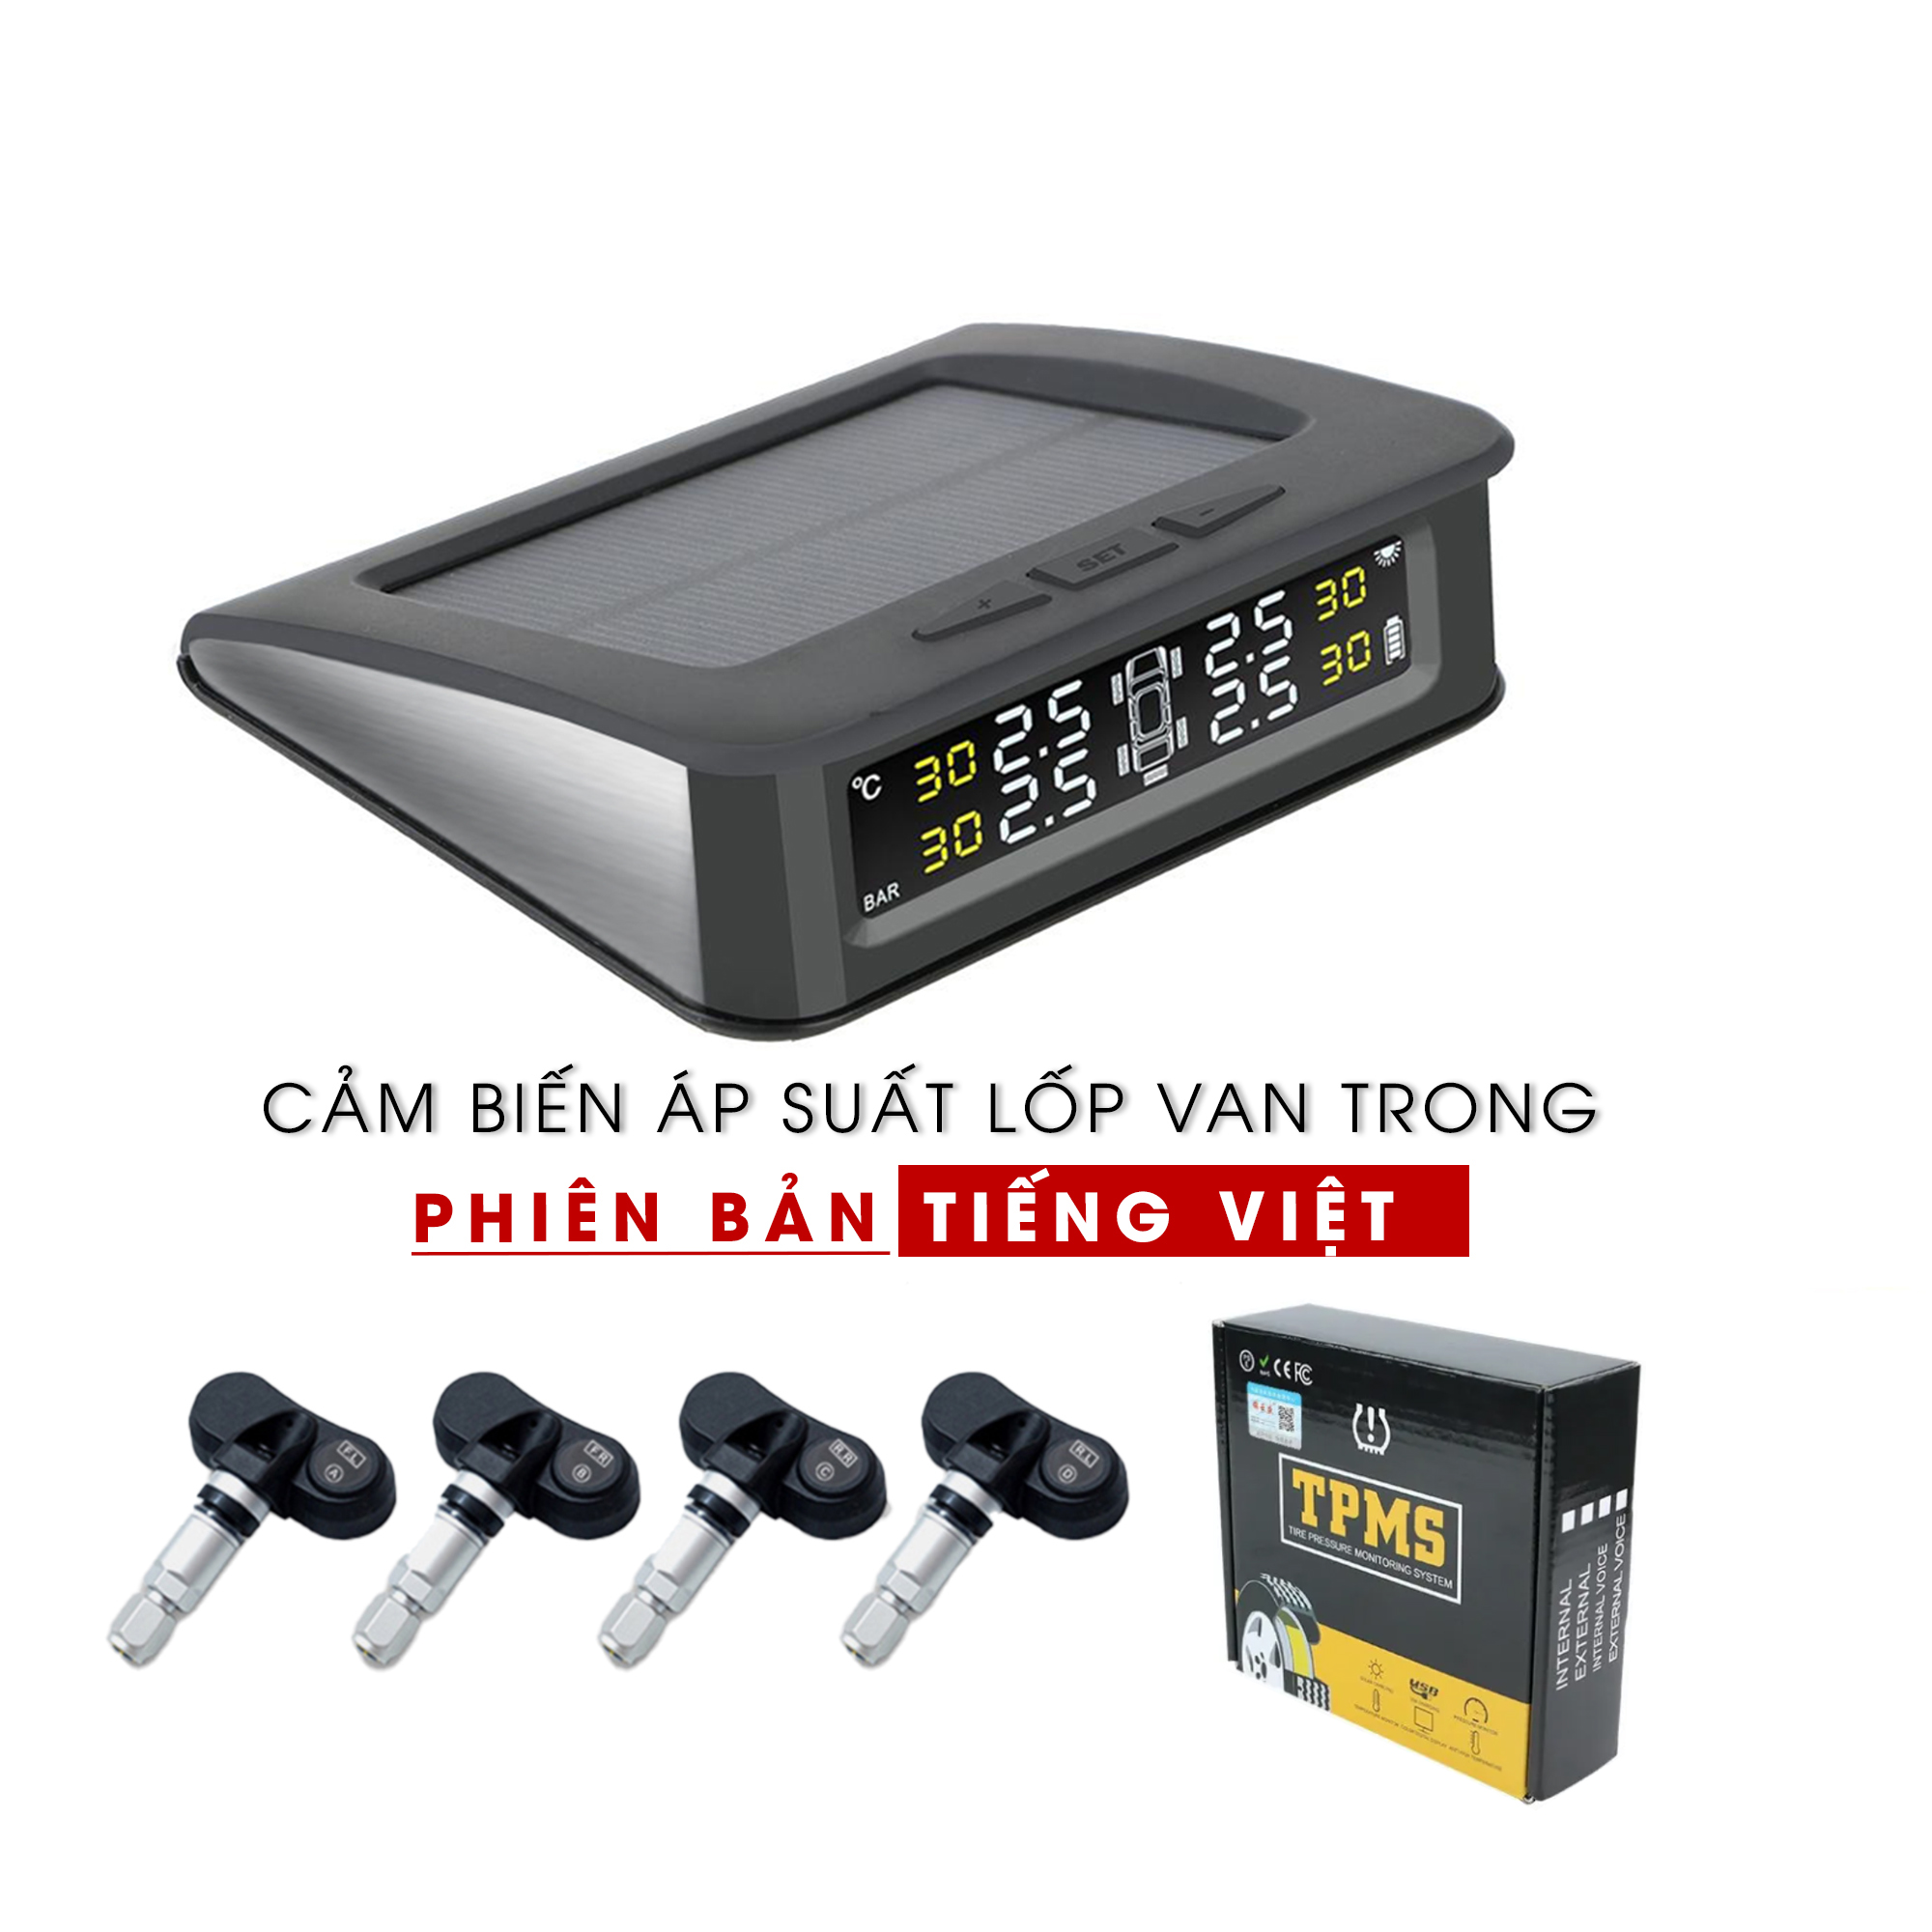 Cảm biến áp suất lốp ô tô xe hơi cảnh báo Tiếng Việt tuyệt vời TPMS Bản Cao Cấp Màn Hình Màu LCD phiên bản van trong và van ngoài cao cấp